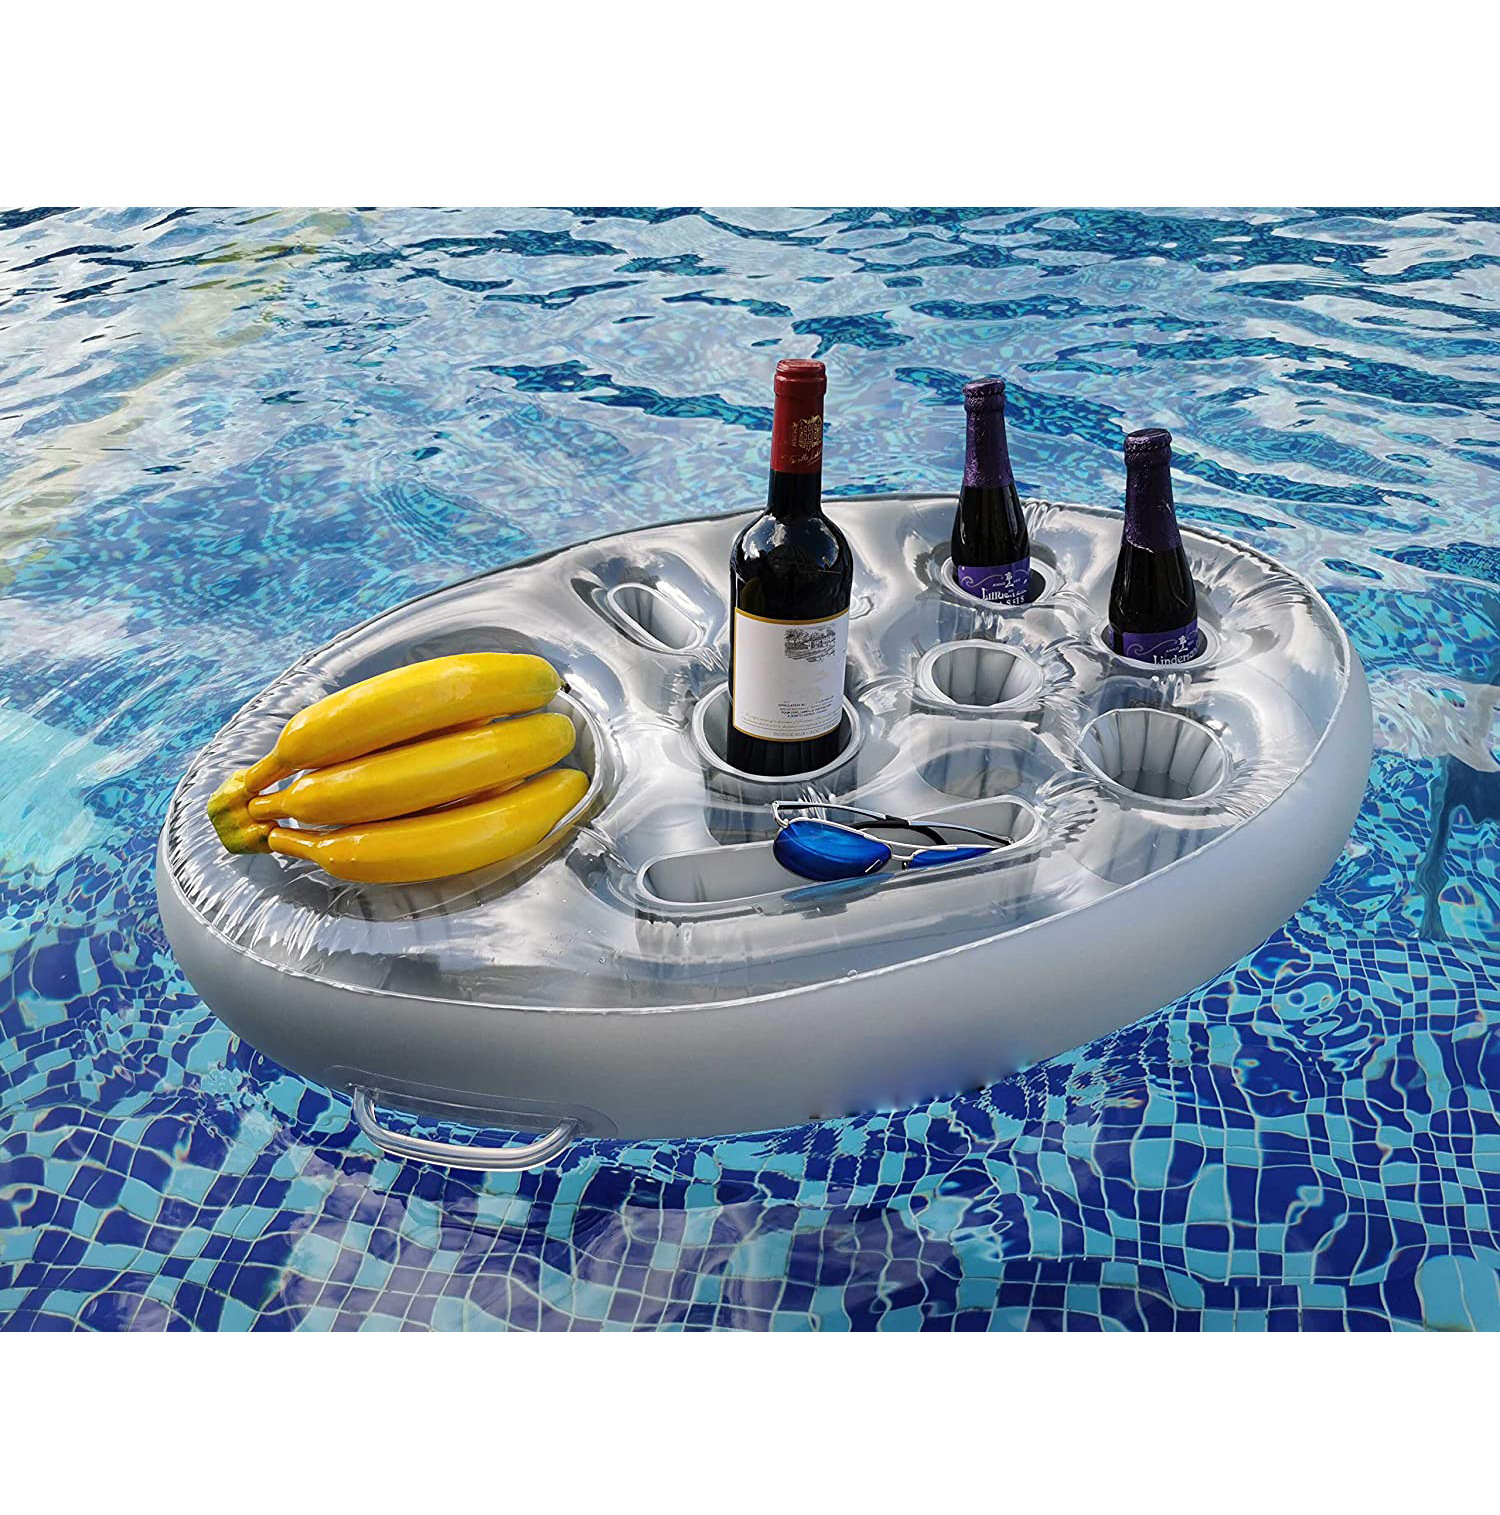 泳池漂浮杯座派对水上漂浮冰桶 饮料啤酒垫 充气水上杯垫漂浮饮料